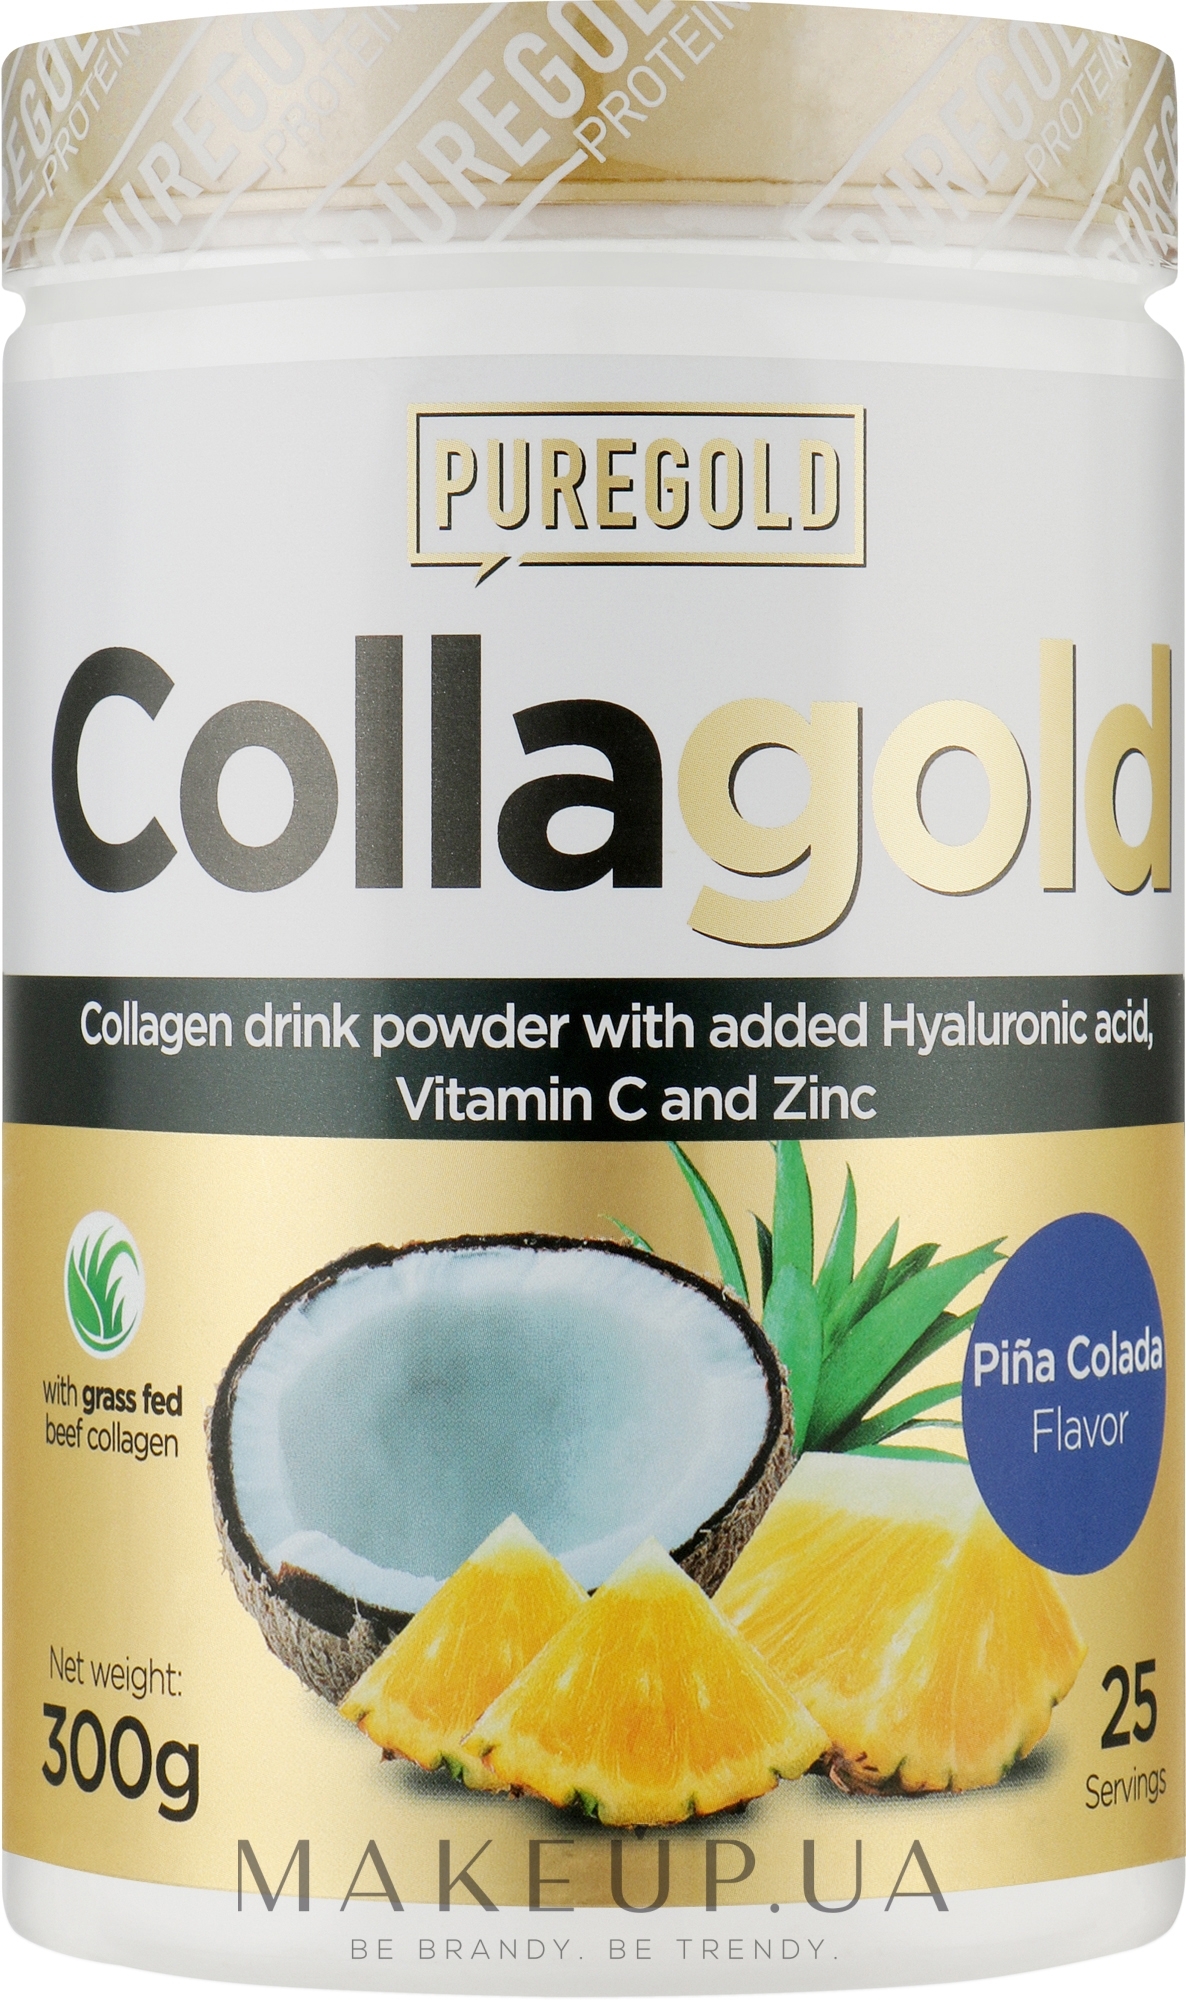 Коллаген с гиалуроновой кислотой, витамином С и цинком, пина колада - PureGold CollaGold Pina Colada — фото 300g